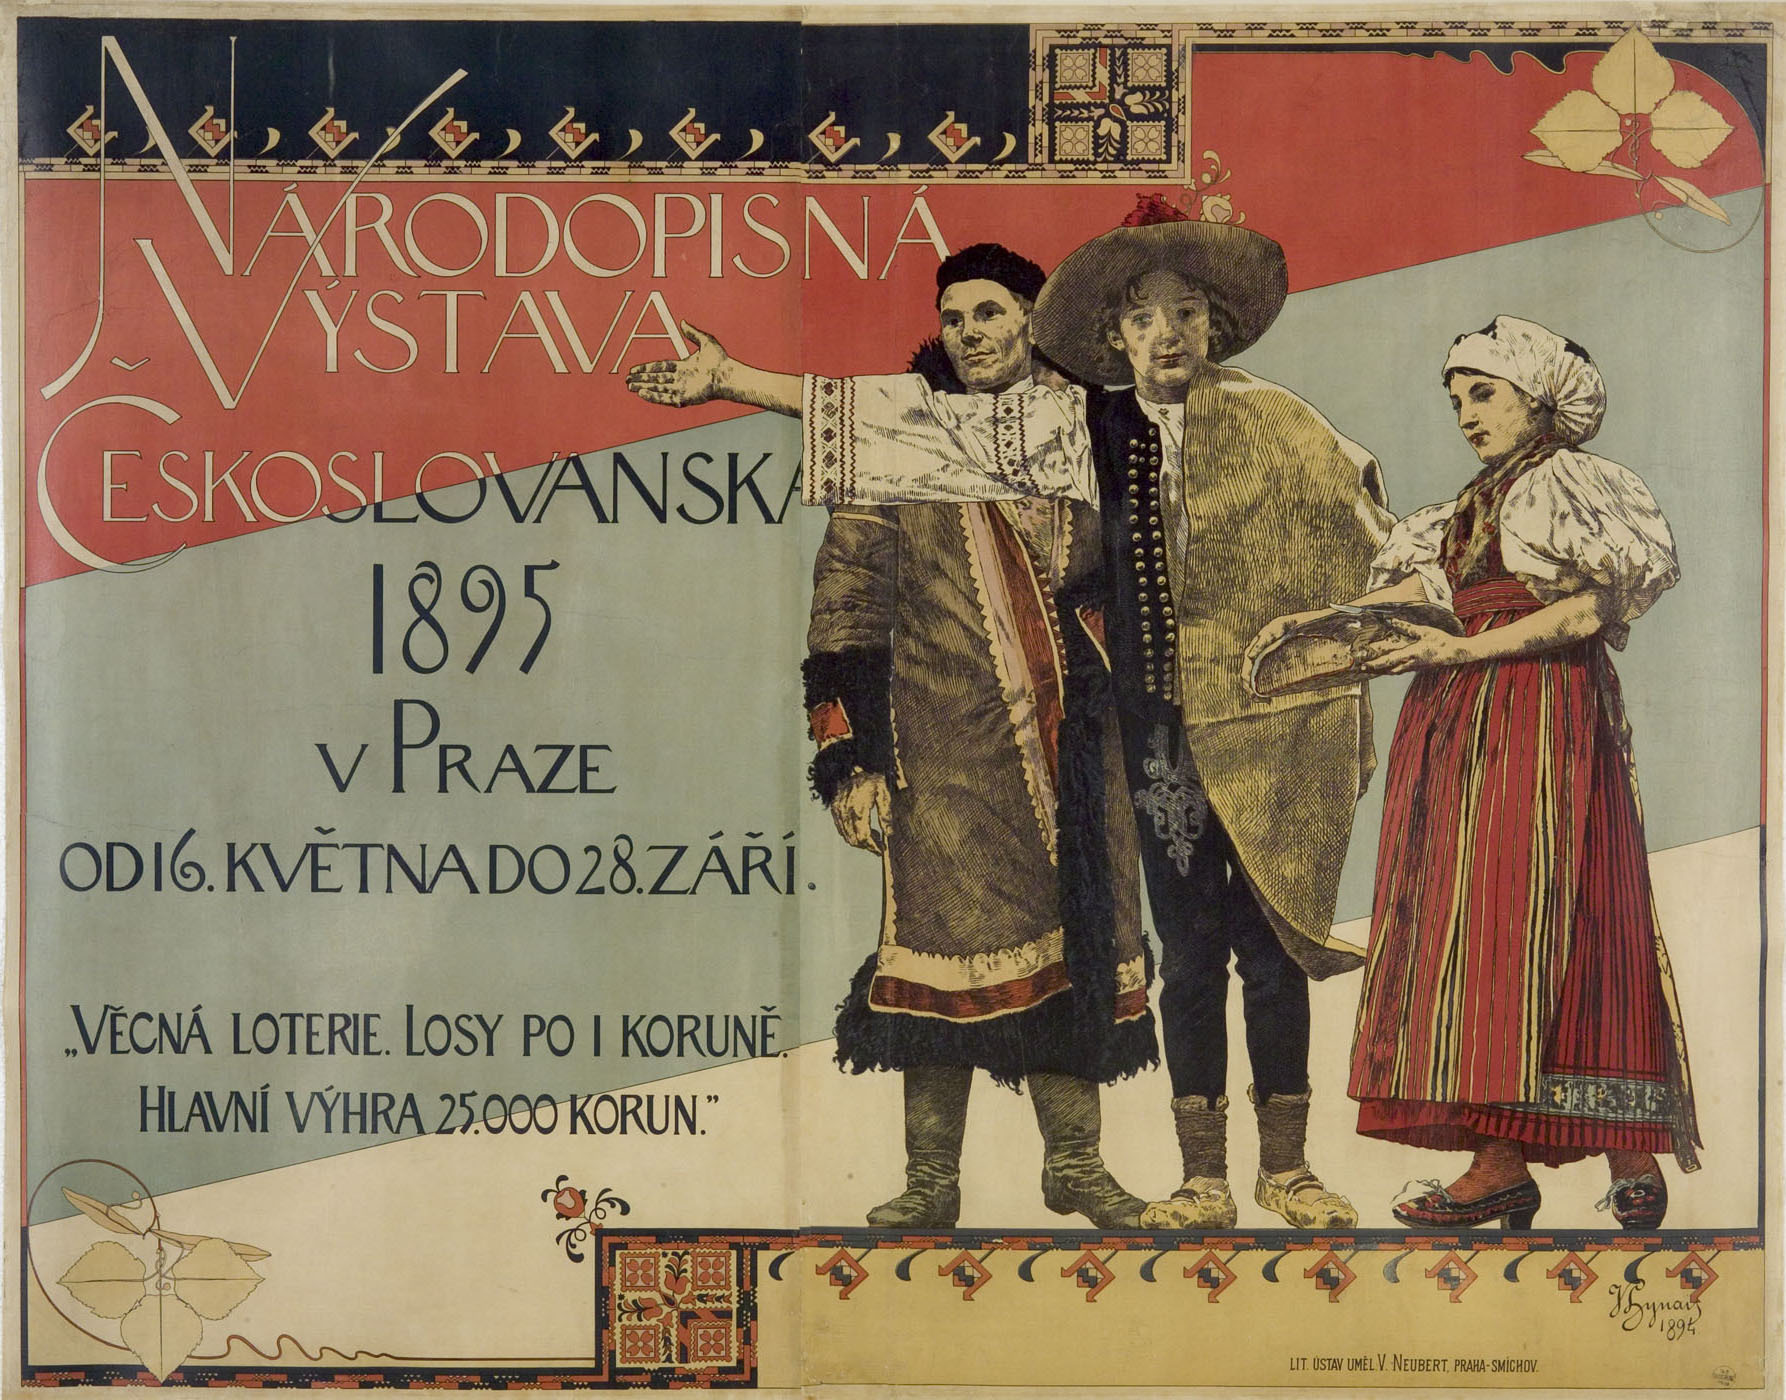 Plagát z uvedenej výstavy z r. 1895, na ktorú pozýval mládenec vo valašskom kroji z Púchovskej doliny